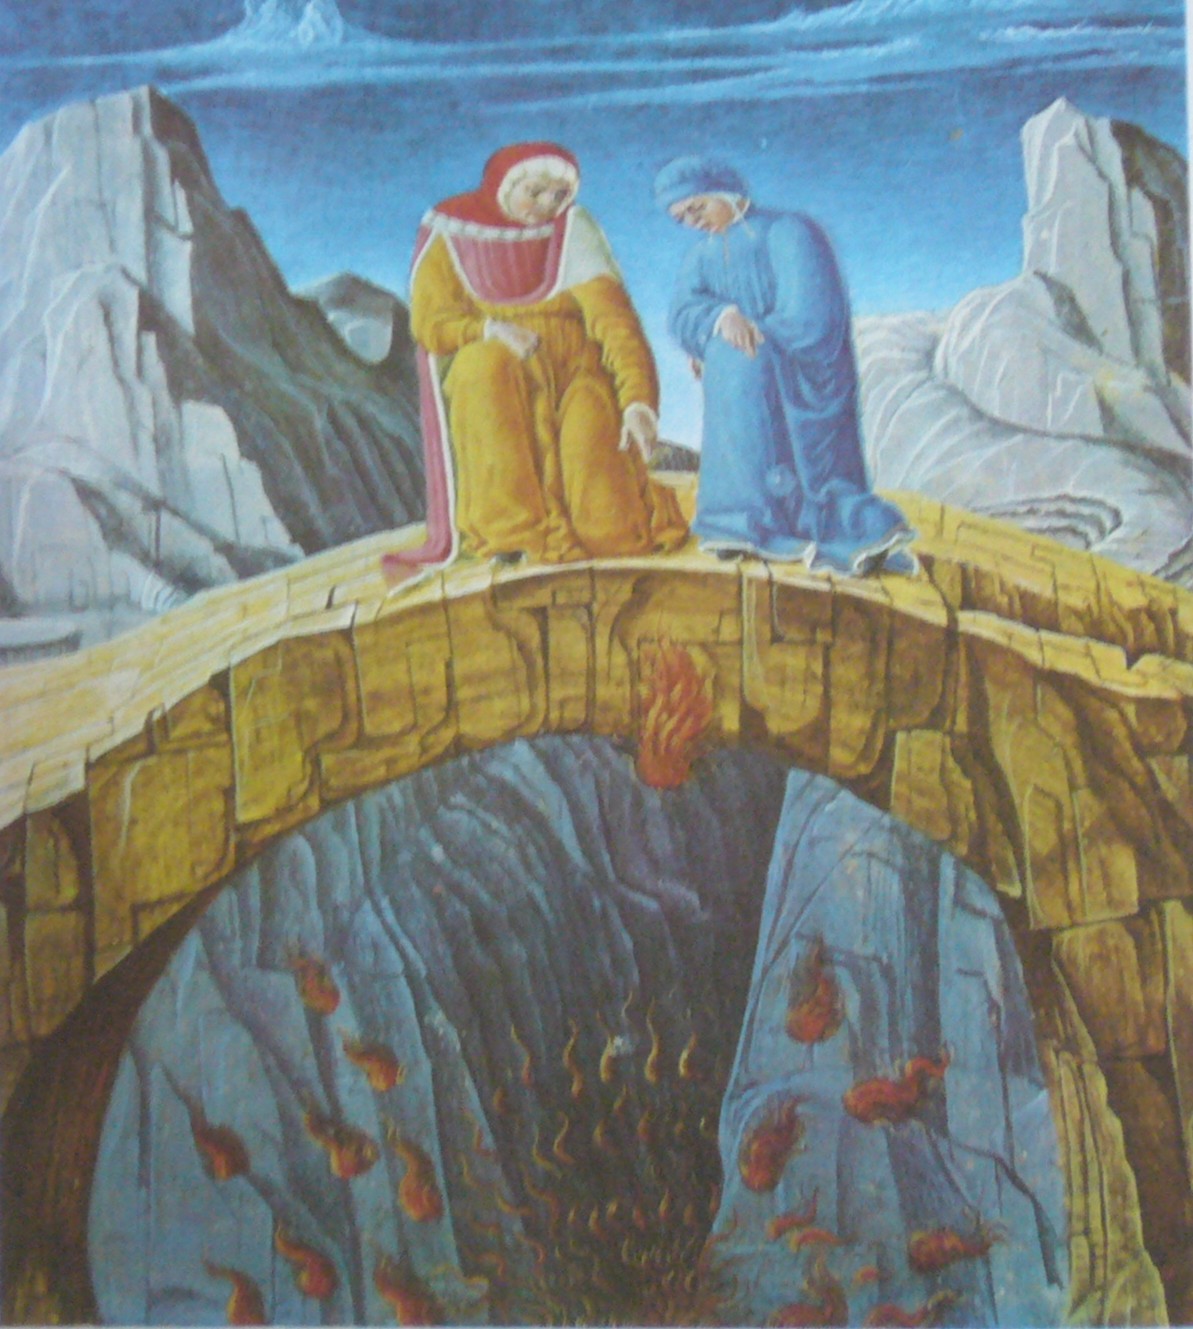 SFĂTUITORII DE NŞELĂCIUNE [Miniatura ferrareza, 1474-1482]